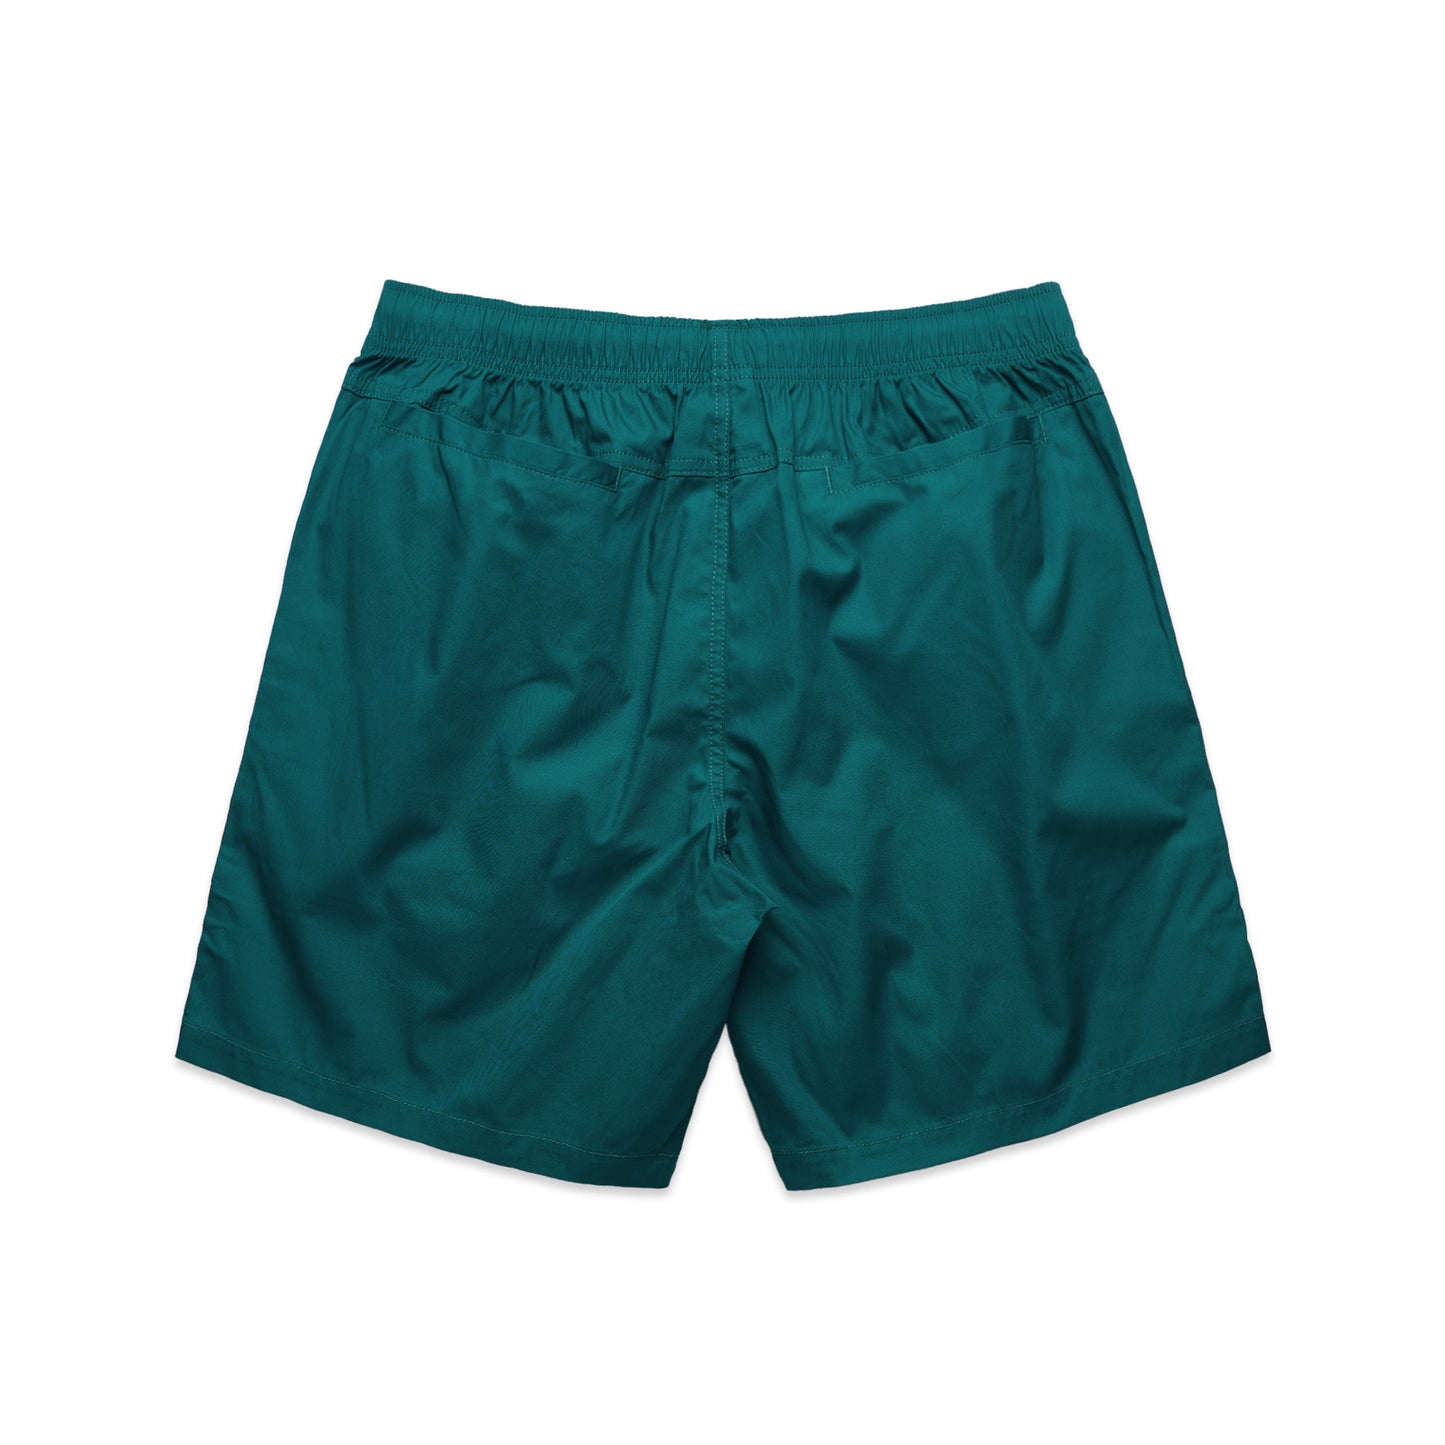 SOULSKY Men's Beach Shorts (Deep Green)